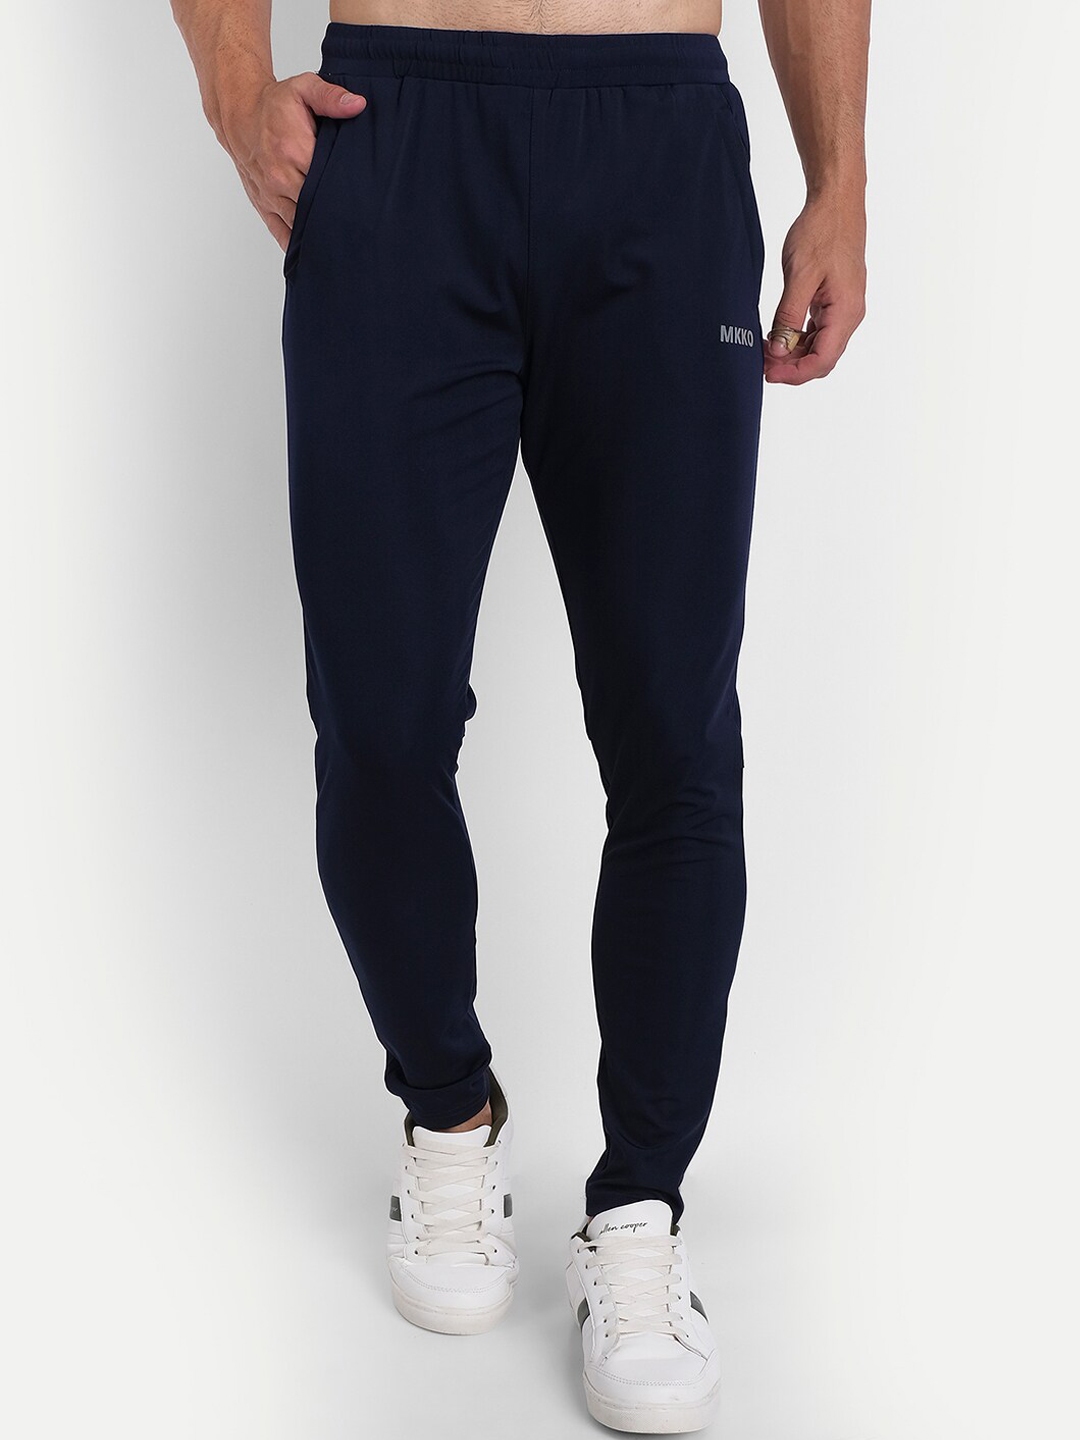 Buy MKKO Men Navy Blue Solid Slim Fit Track Pants - Track Pants for Men ...